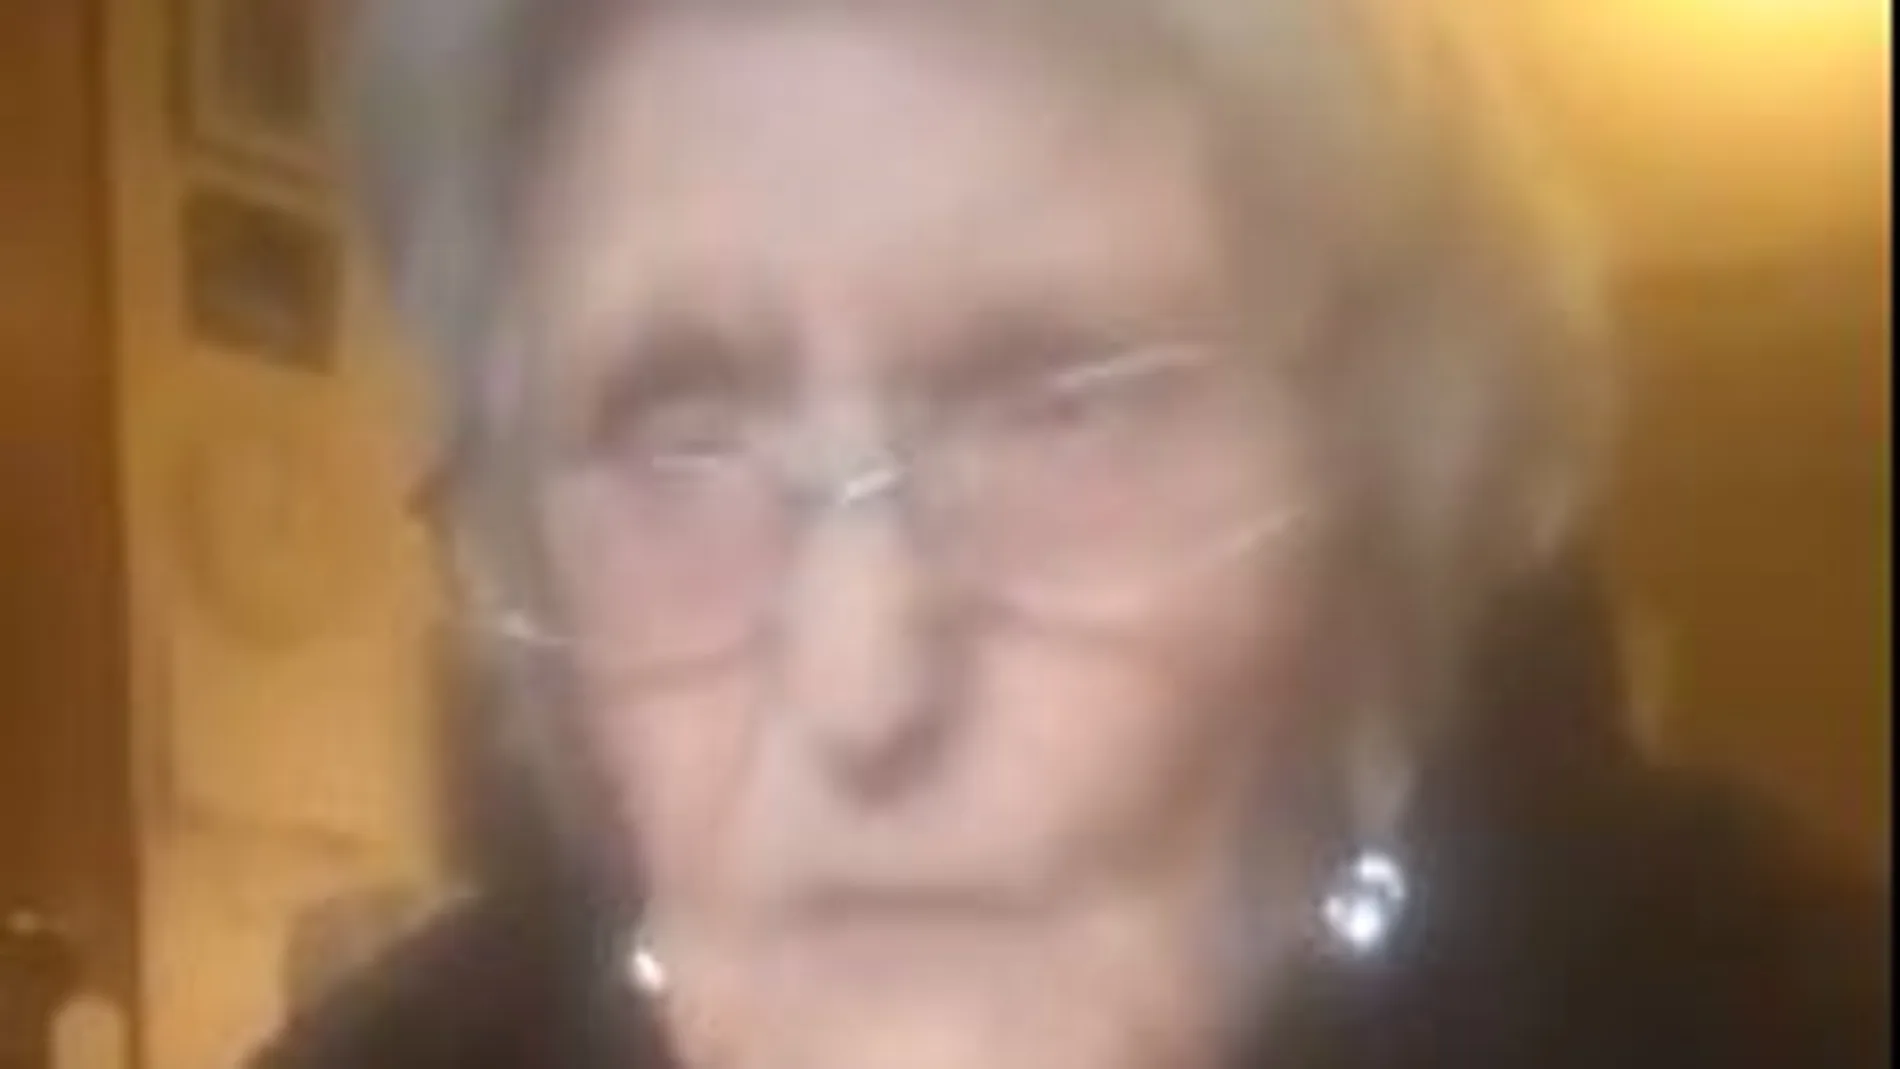 Mary Fowler, la anciana de 104 que pide volver a ver a su familia.